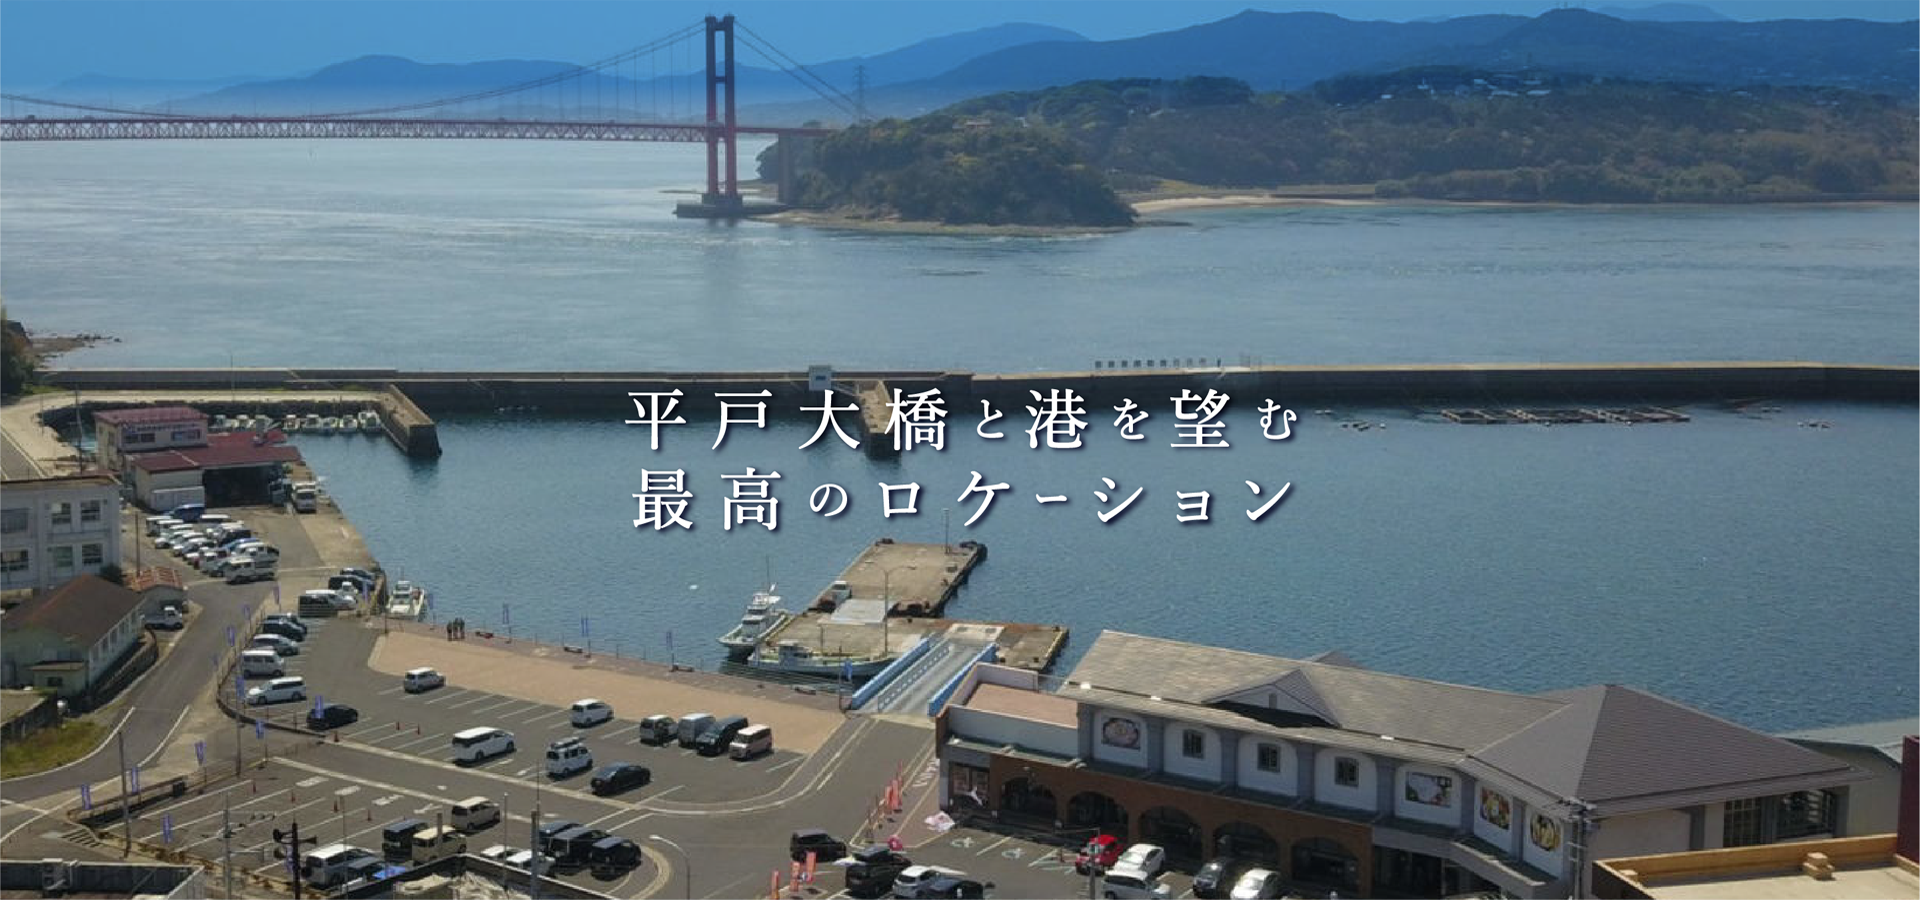 平戸大橋と港を望む最高のロケーション